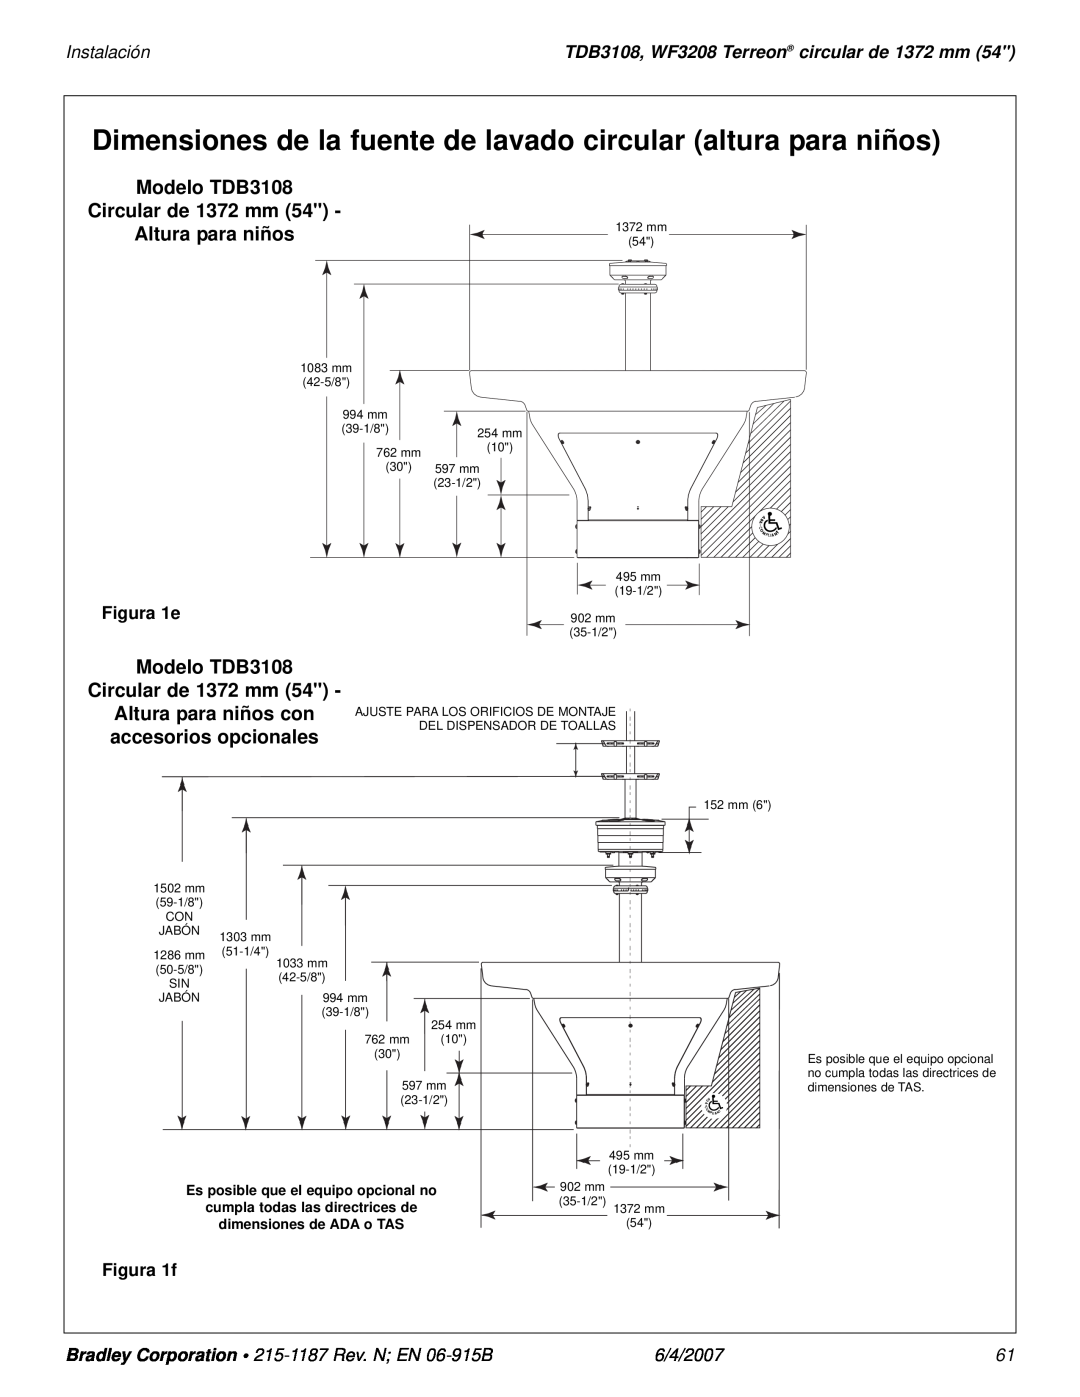 Bradley Smoker Dimensiones de la fuente de lavado circular altura para niños, Modelo TDB3108 Circular de 1372 mm 